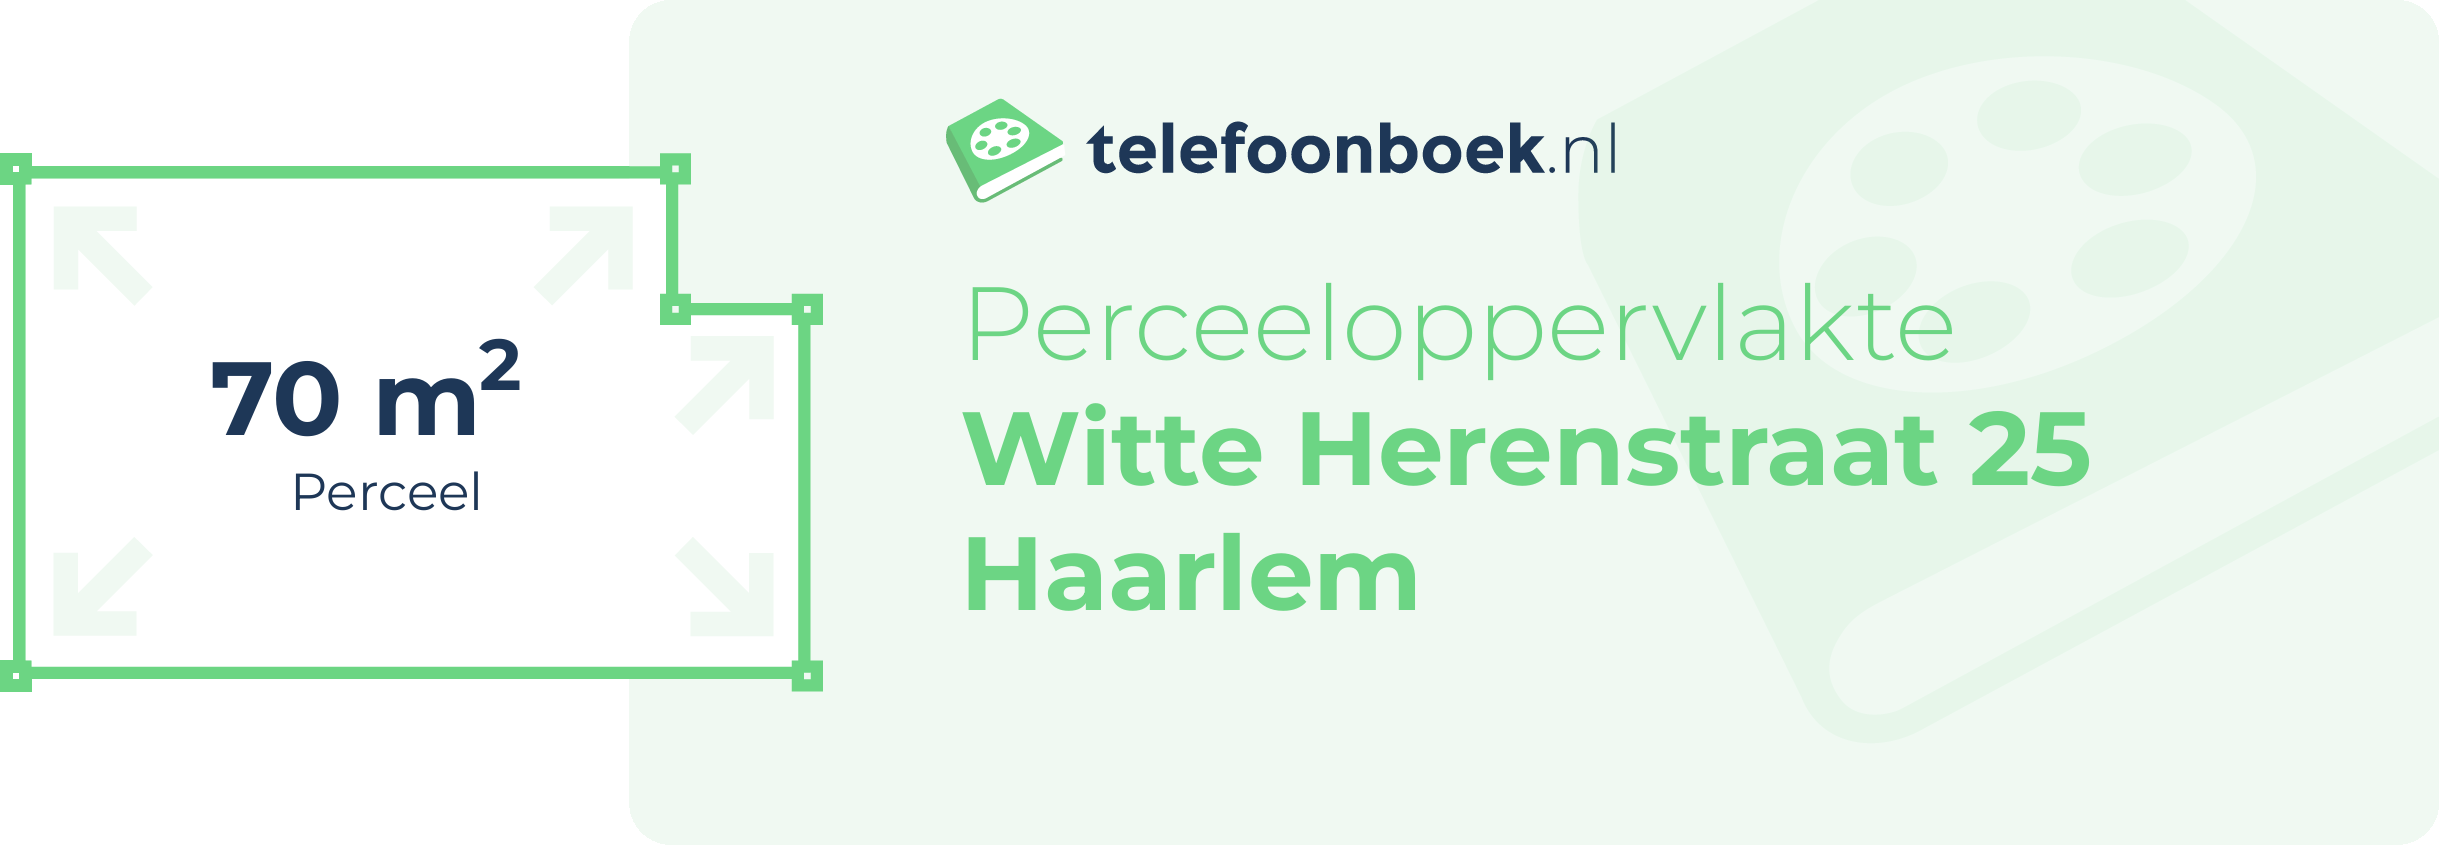 Perceeloppervlakte Witte Herenstraat 25 Haarlem